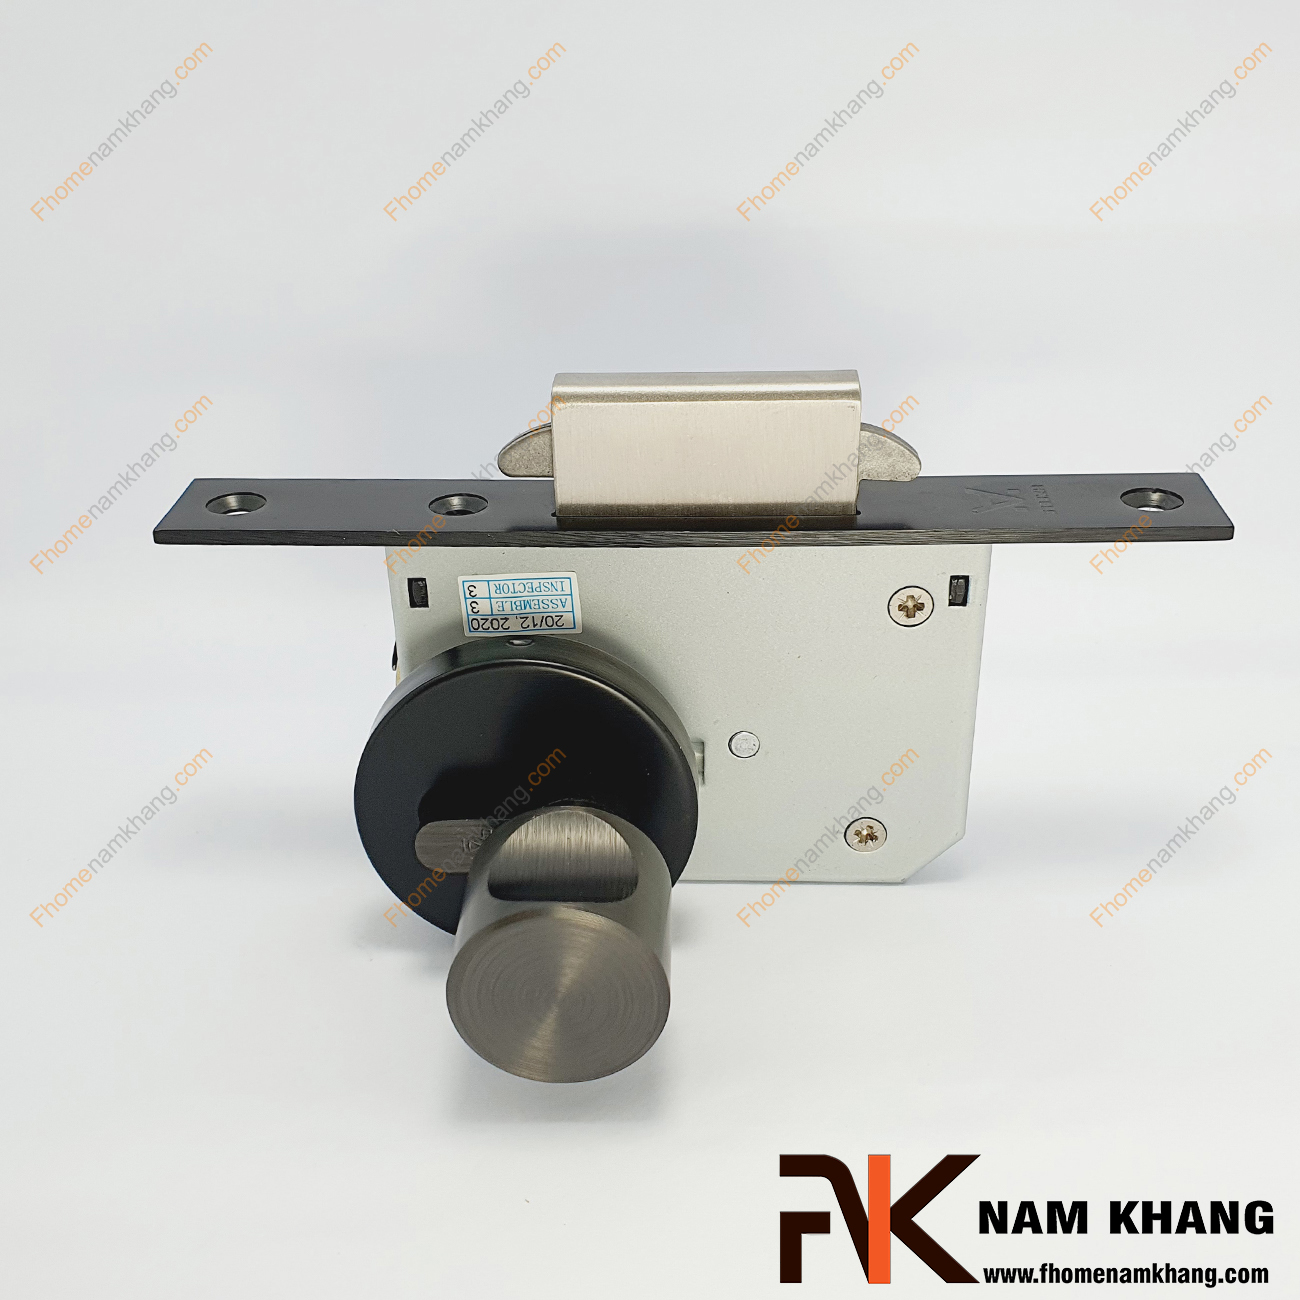 Khóa âm cửa lùa màu đen mờ NK556-D là dòng khóa thông dụng và được ưa chuộng sử dụng tại thị trường Việt Nam.  Nhờ tính chất gọn nhẹ, linh hoạt, dễ lắp đặt và sử dụng, lại mang yếu tố thẫm mĩ cao